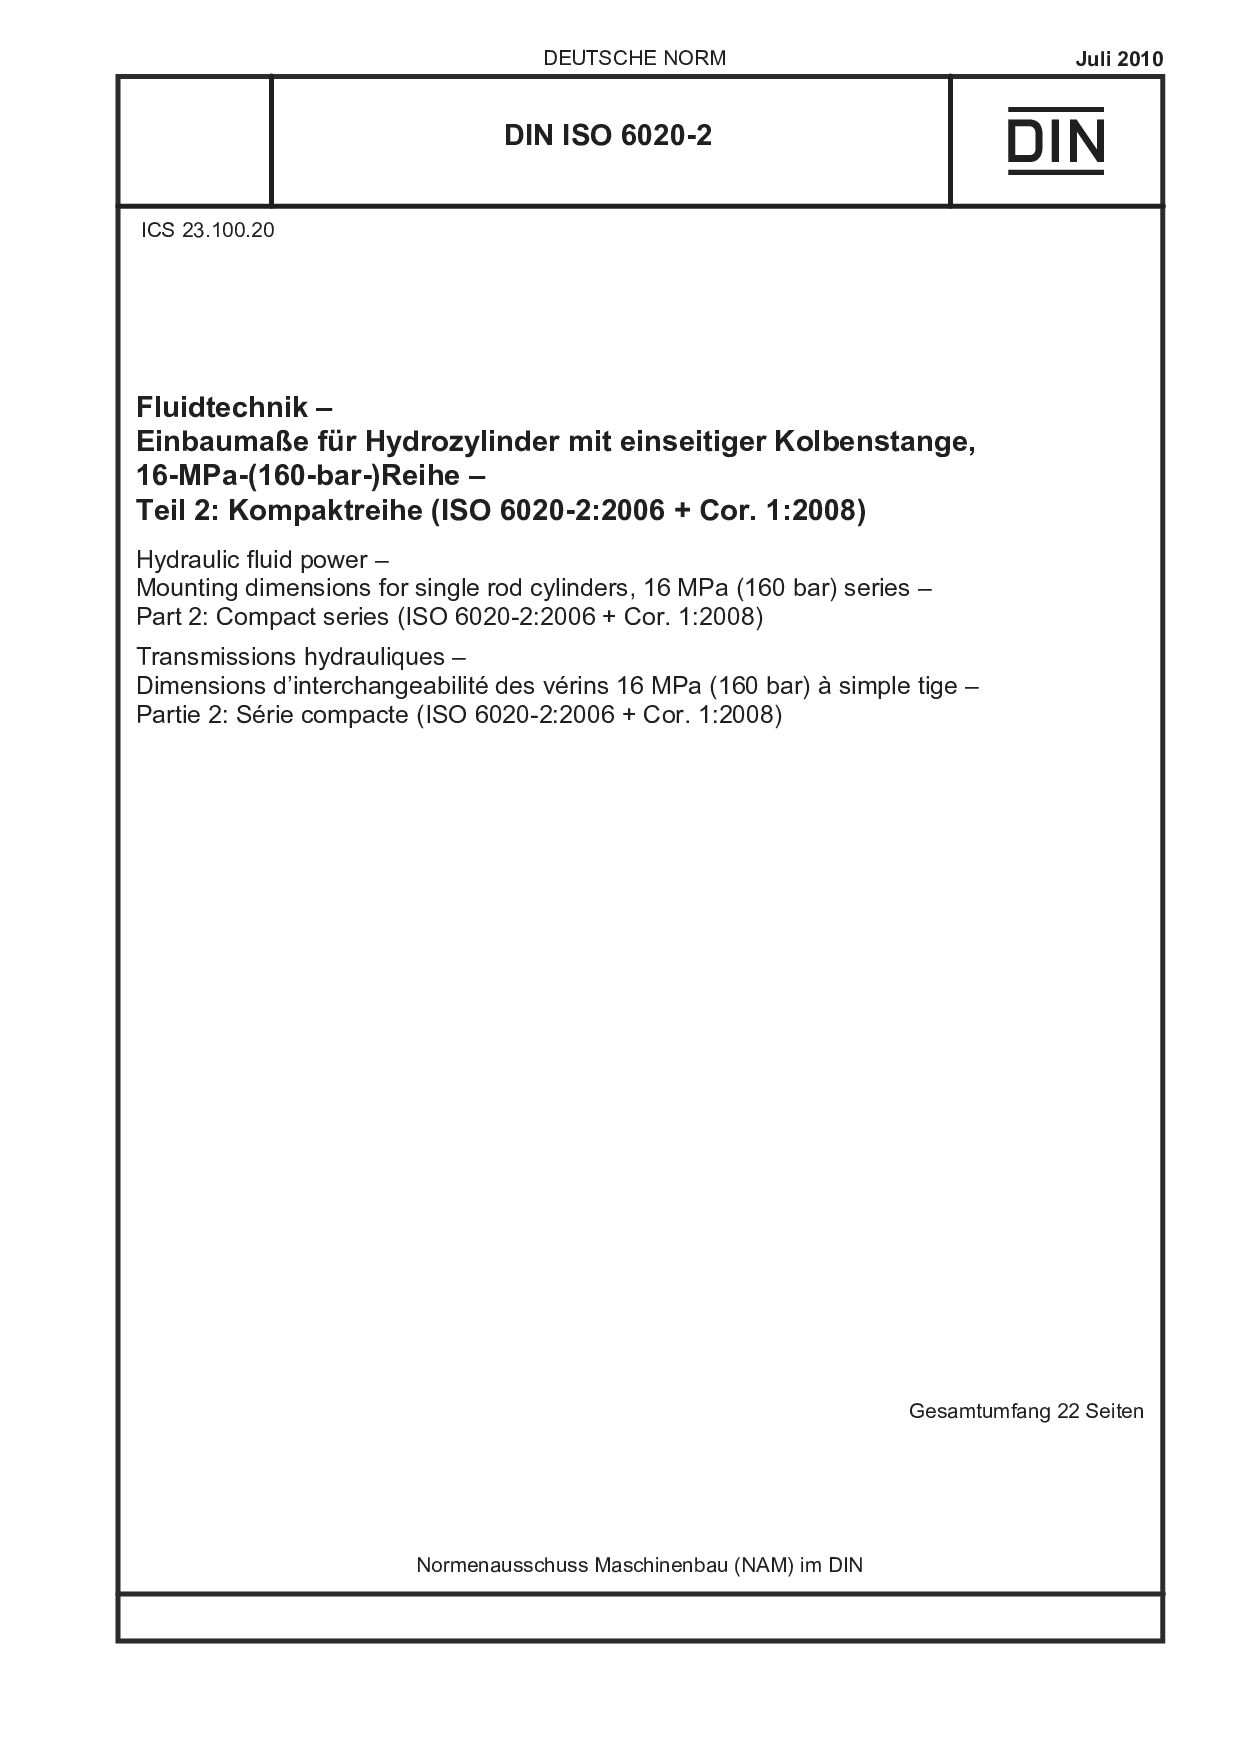 DIN ISO 6020-2:2010封面图